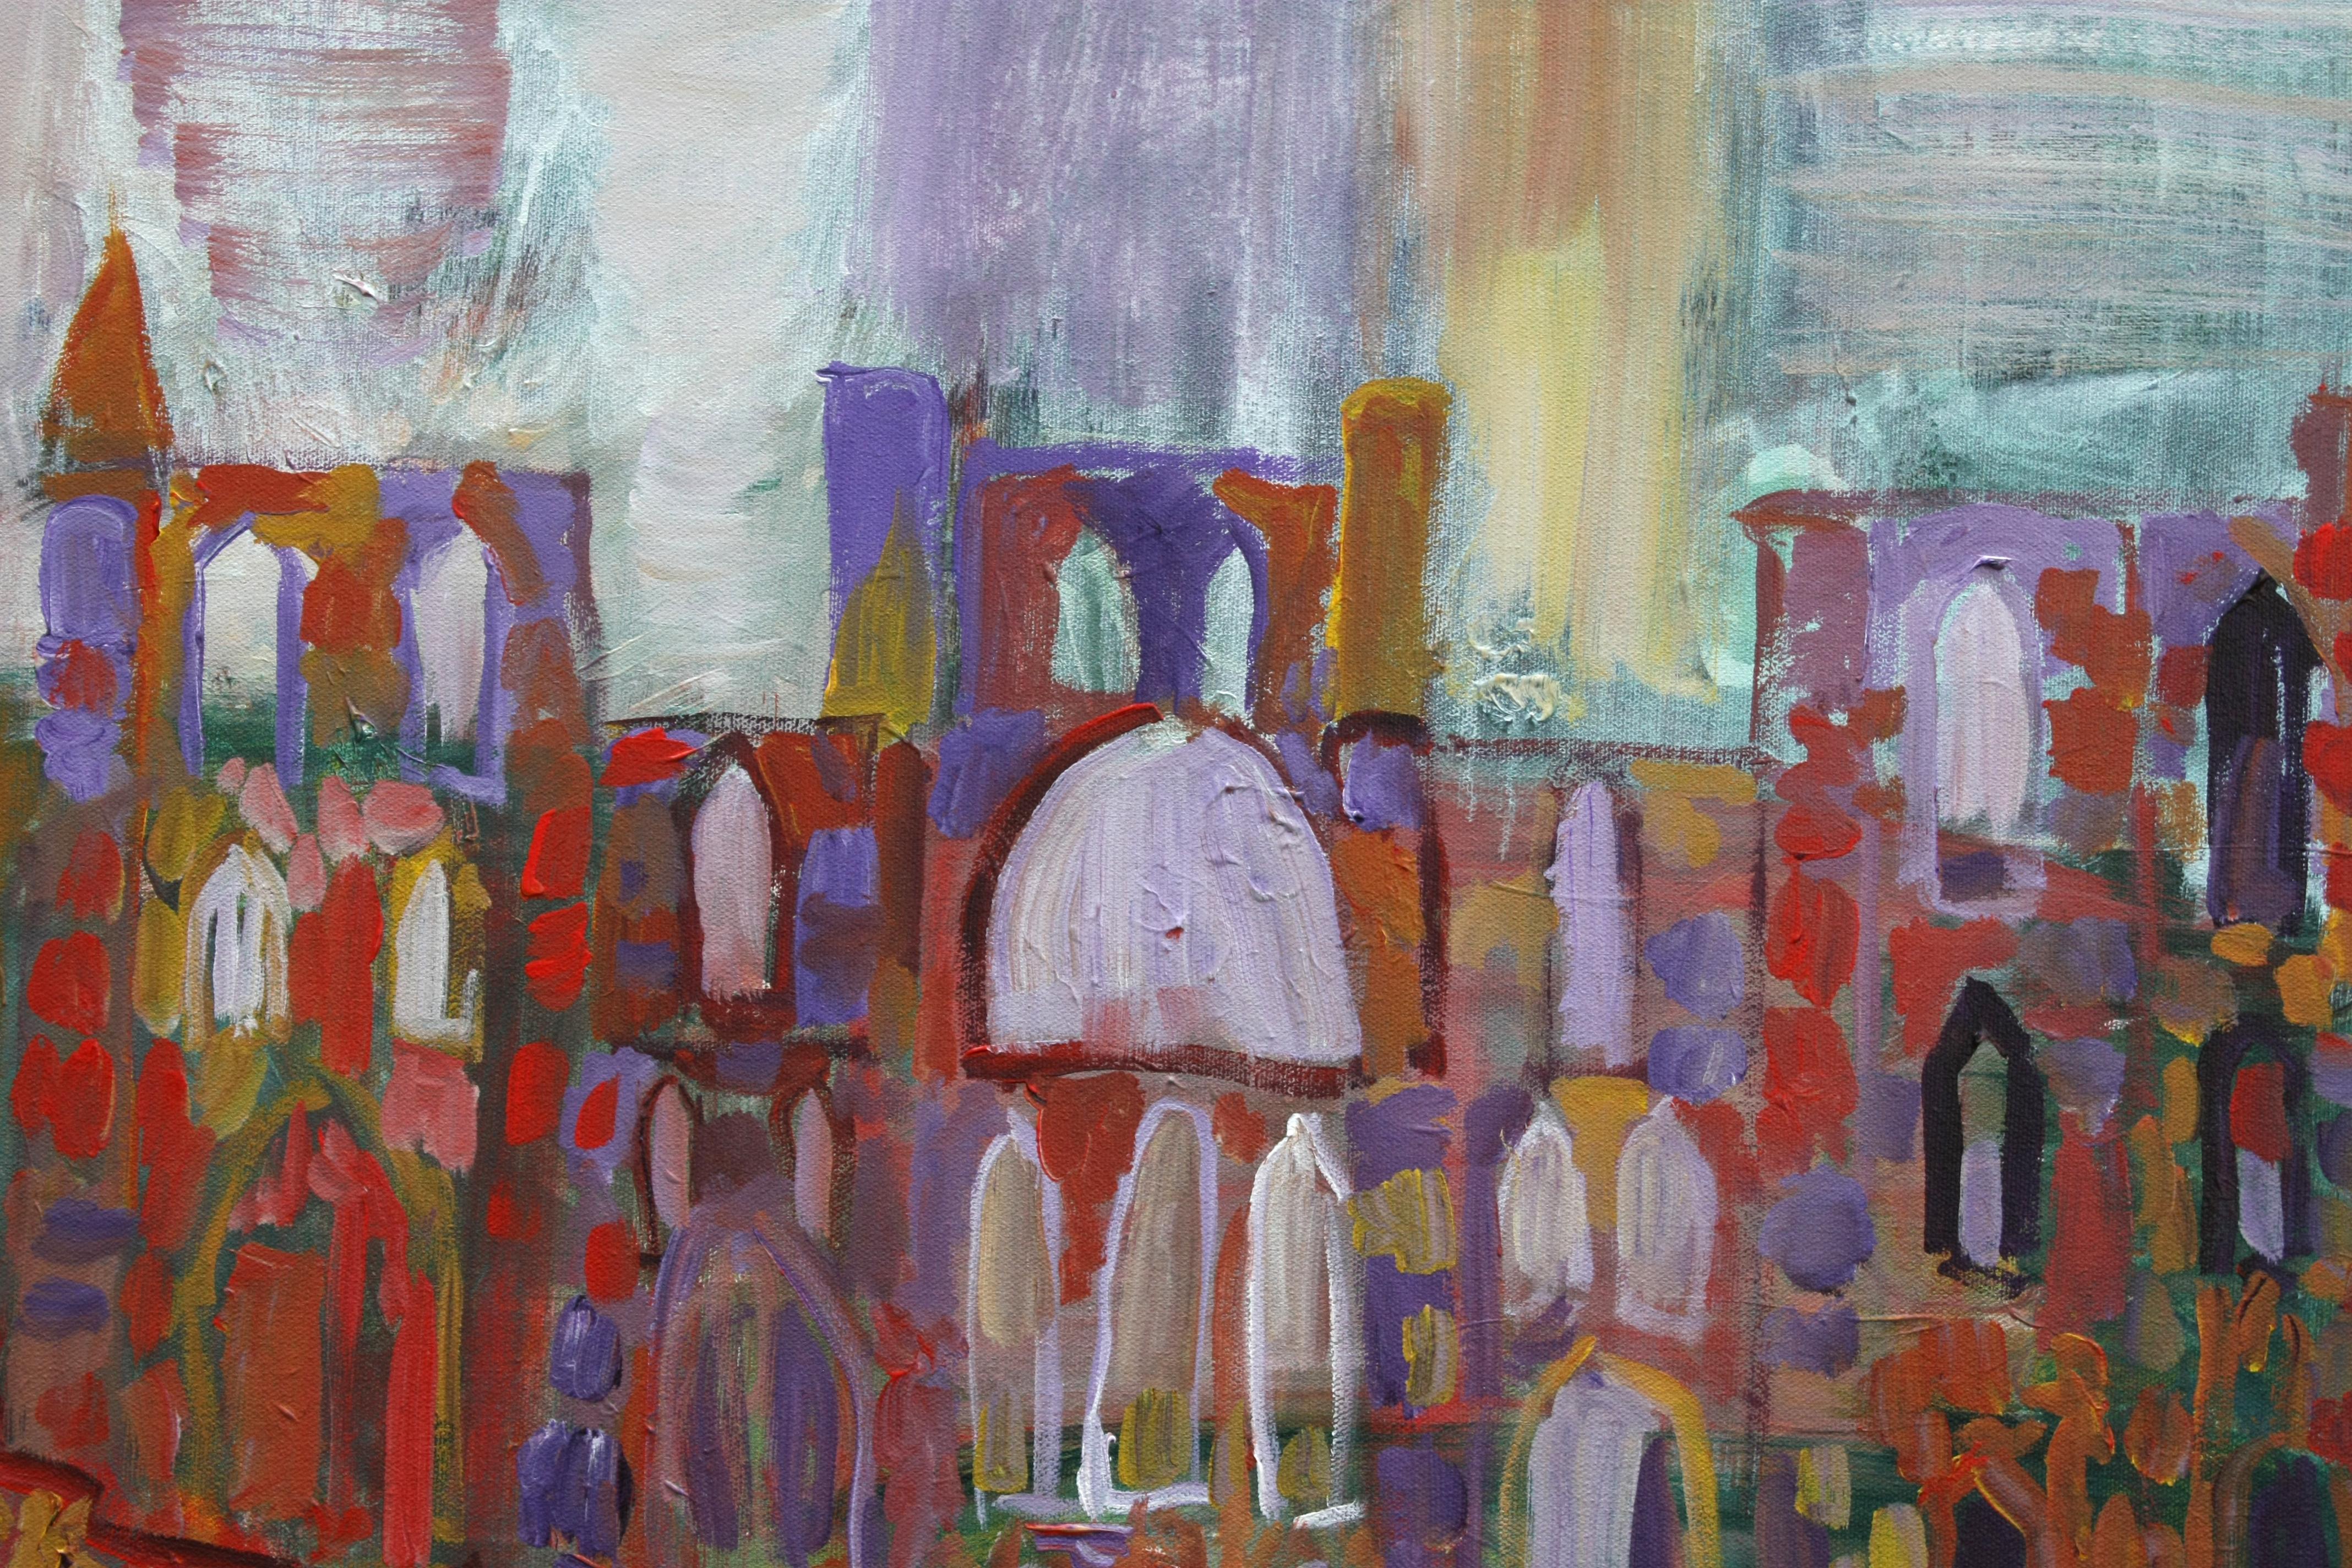 <p>Commentaires de l'artiste<br />Inspirée par le style vibrant de Raoul Dufy, cette représentation des ruines d'un monastère britannique passe du réalisme à des couleurs vives et à un coup de pinceau animé, fusionnant l'esthétique moderne et